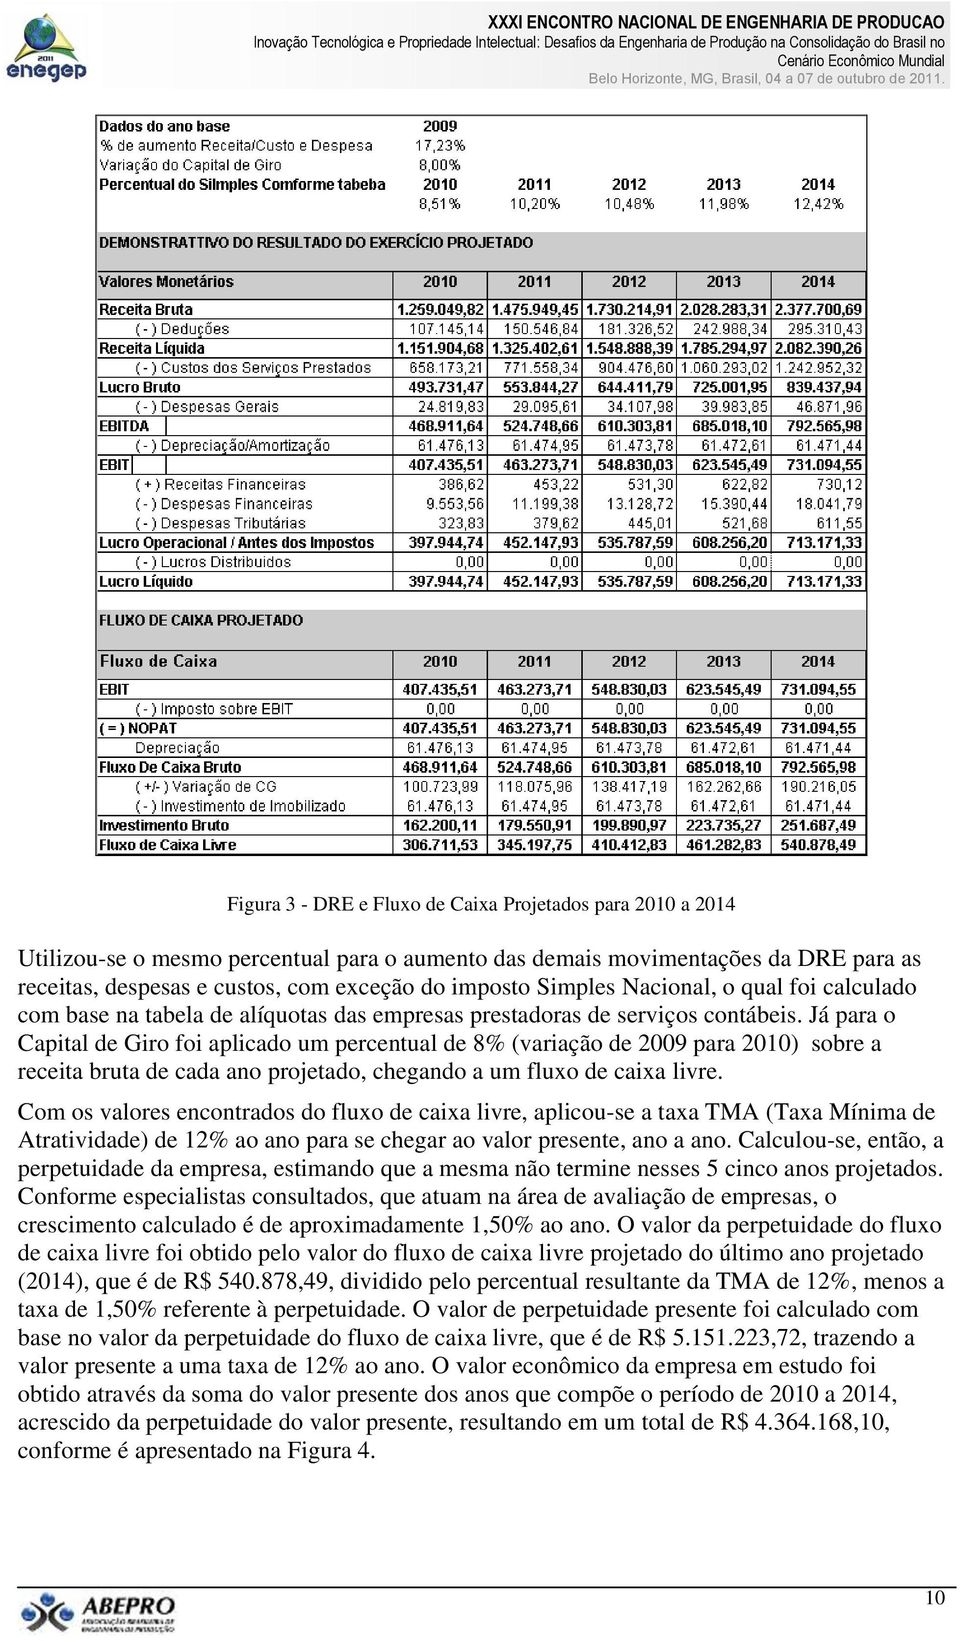 Já para o Capital de Giro foi aplicado um percentual de 8% (variação de 2009 para 2010) sobre a receita bruta de cada ano projetado, chegando a um fluxo de caixa livre.